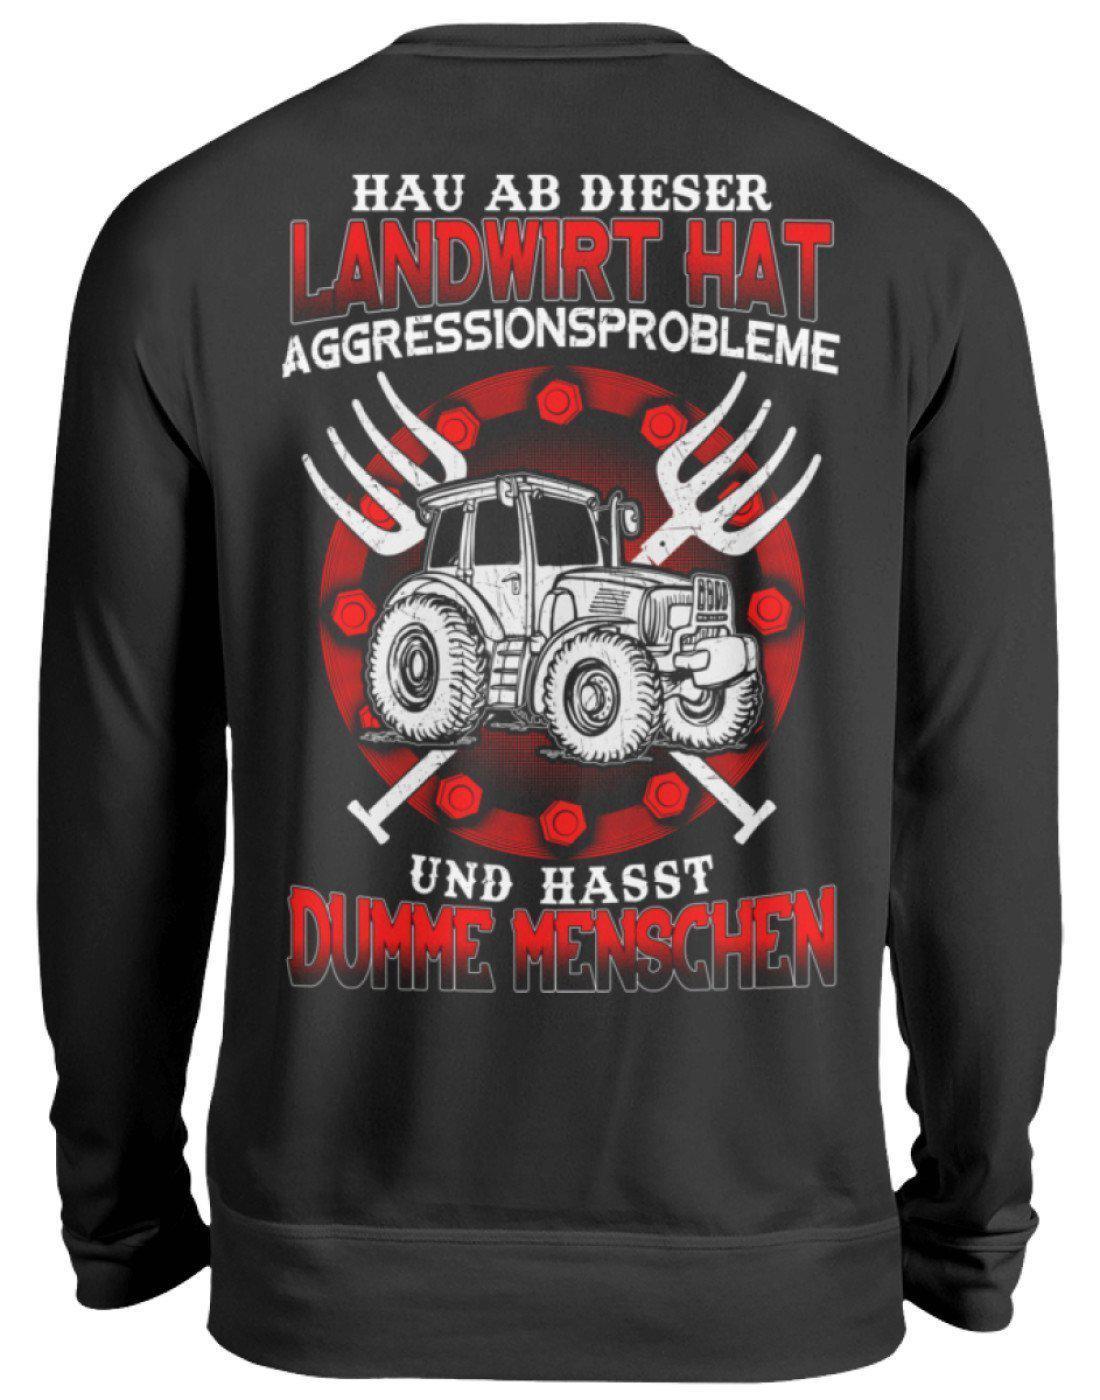 Landwirt hat Aggressionsprobleme · Unisex Sweatshirt Pullover-Unisex Sweatshirt-Jet Black-S-Agrarstarz